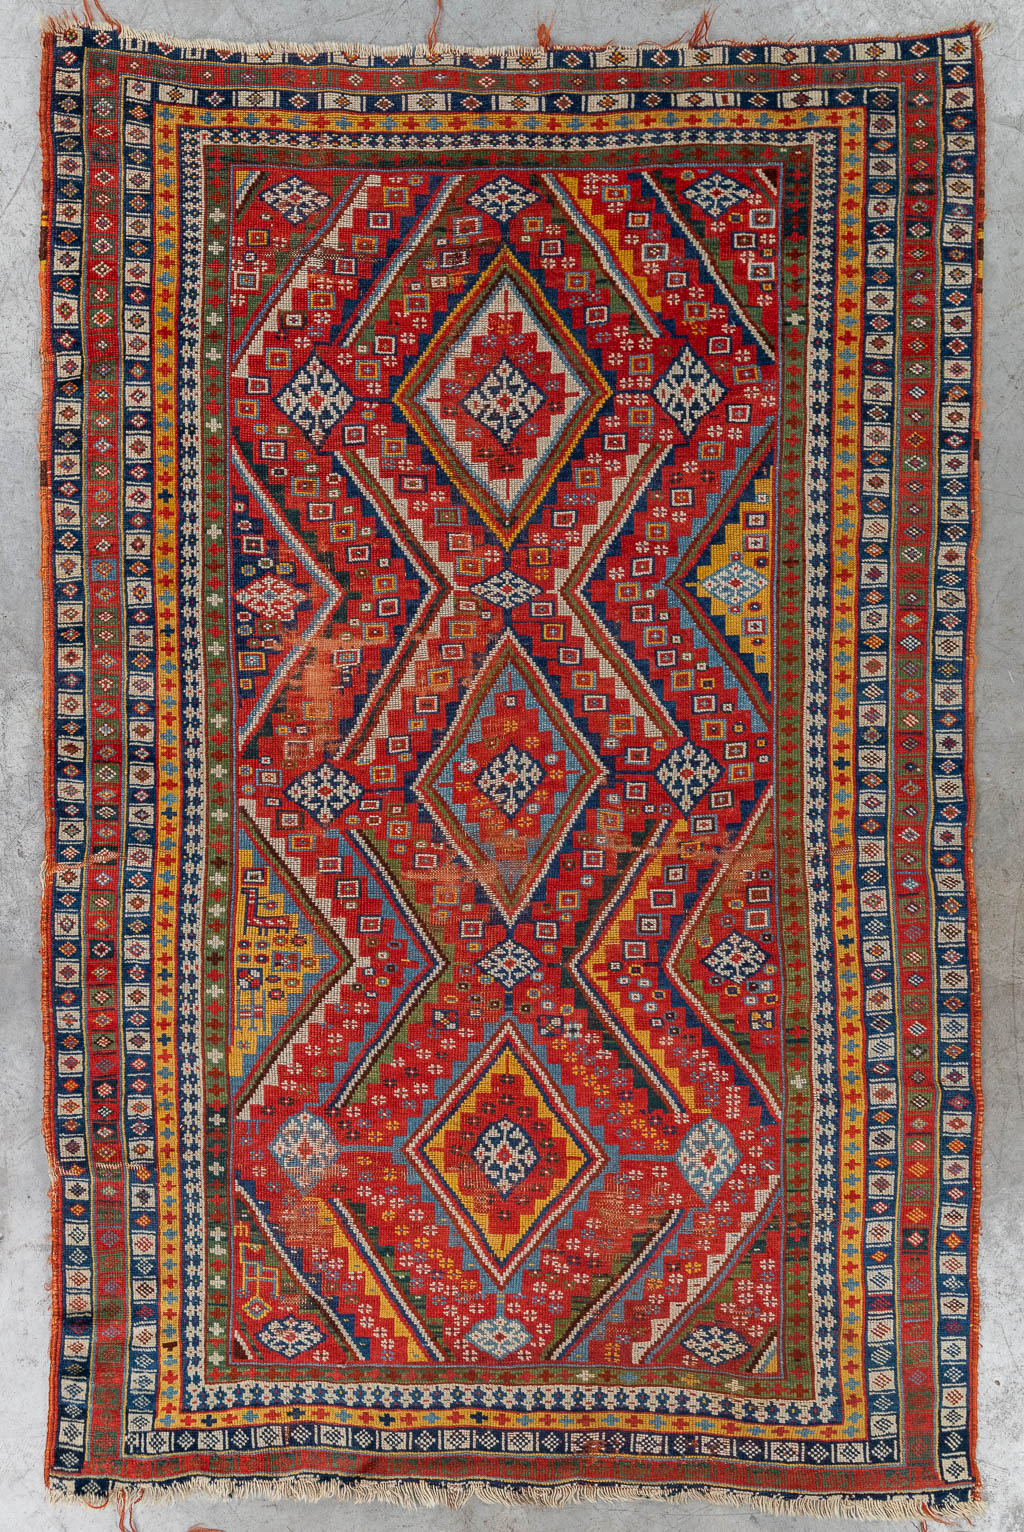 Ochtend gymnastiek Impasse inch Een antiek handgeknoopt Oosters tapijt, Qashqai. (L: 190 x W: 120 cm) |  Flanders Auctions